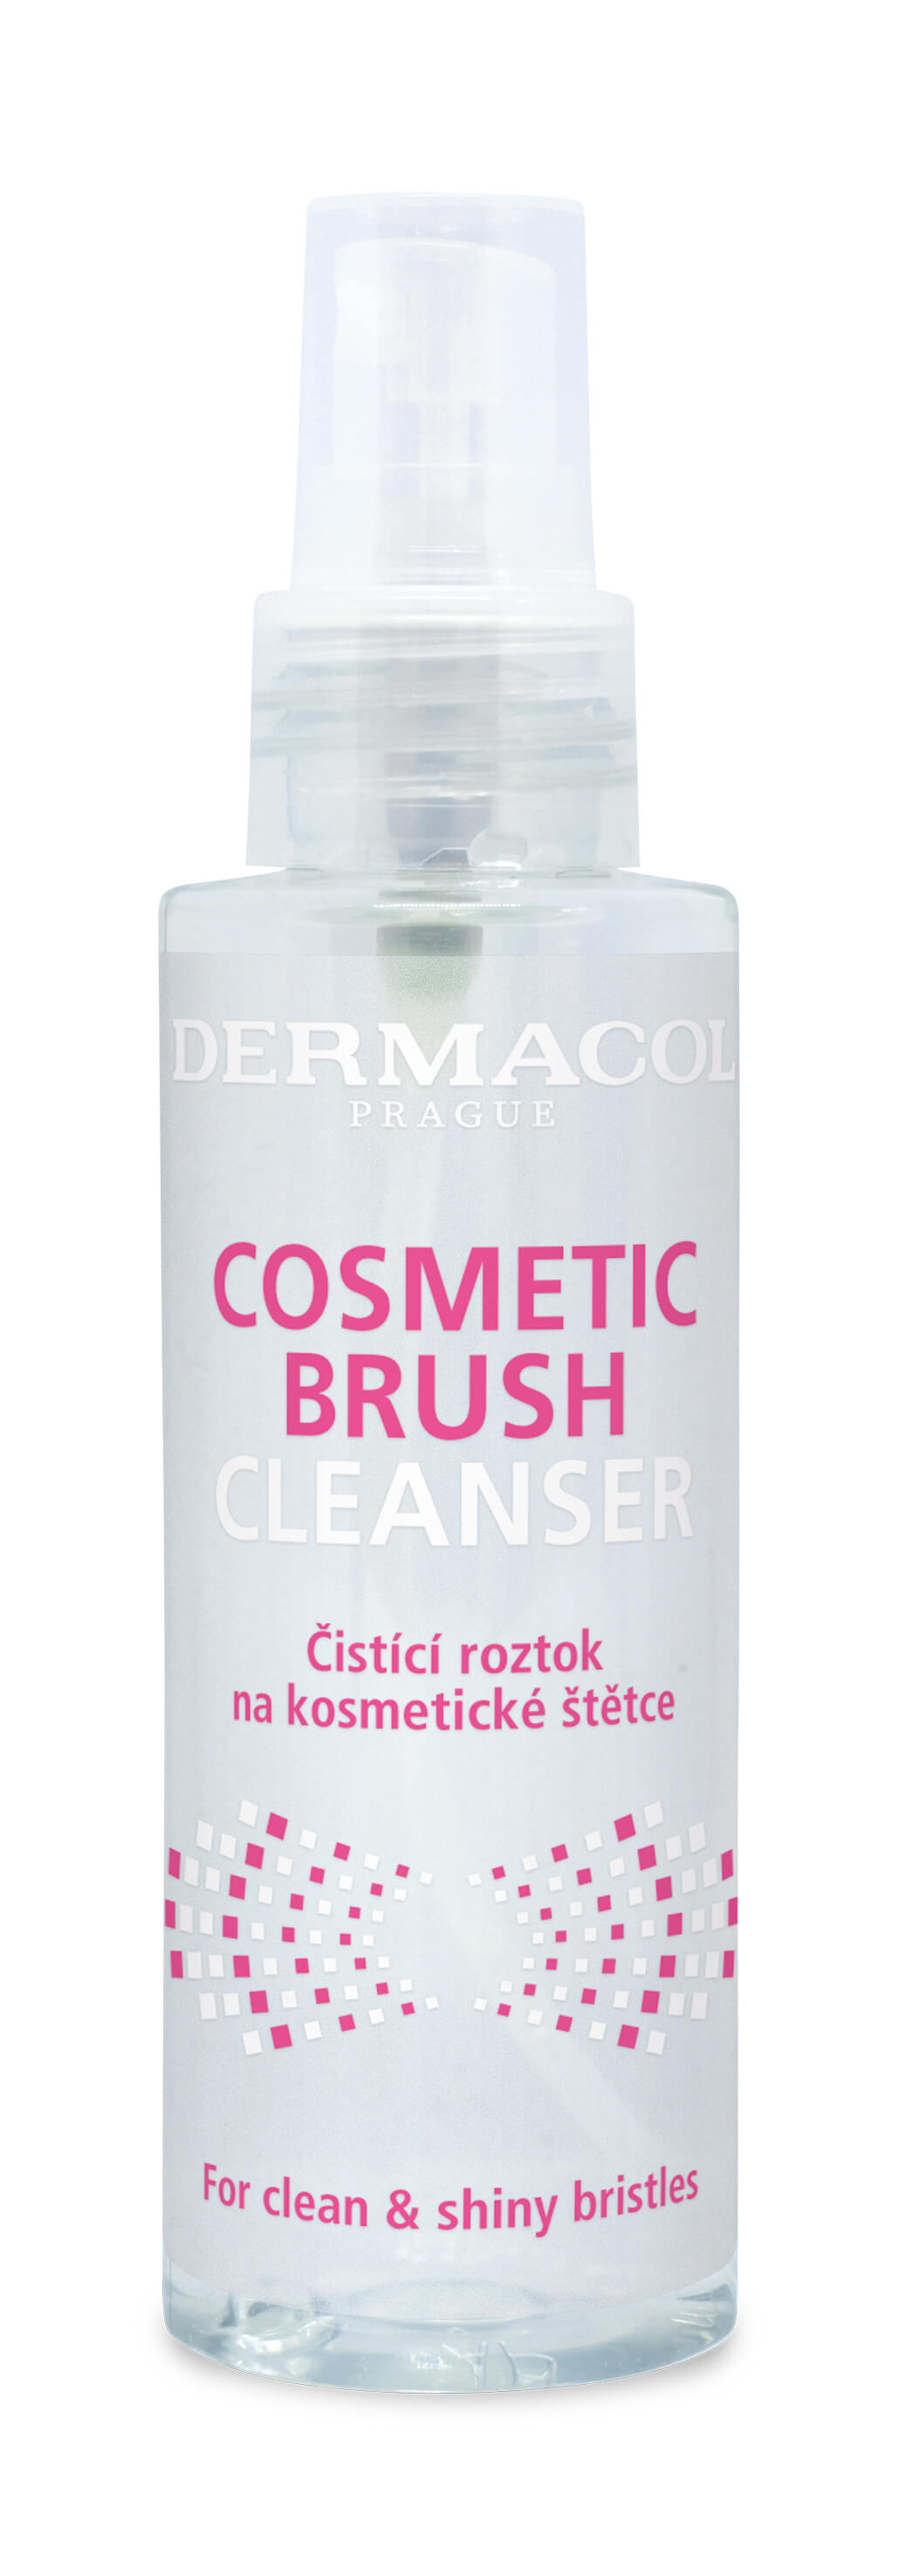 Dermacol Čisticí roztok na kosmetické štětce (Cosmetic Brush Cleanser) 100 ml